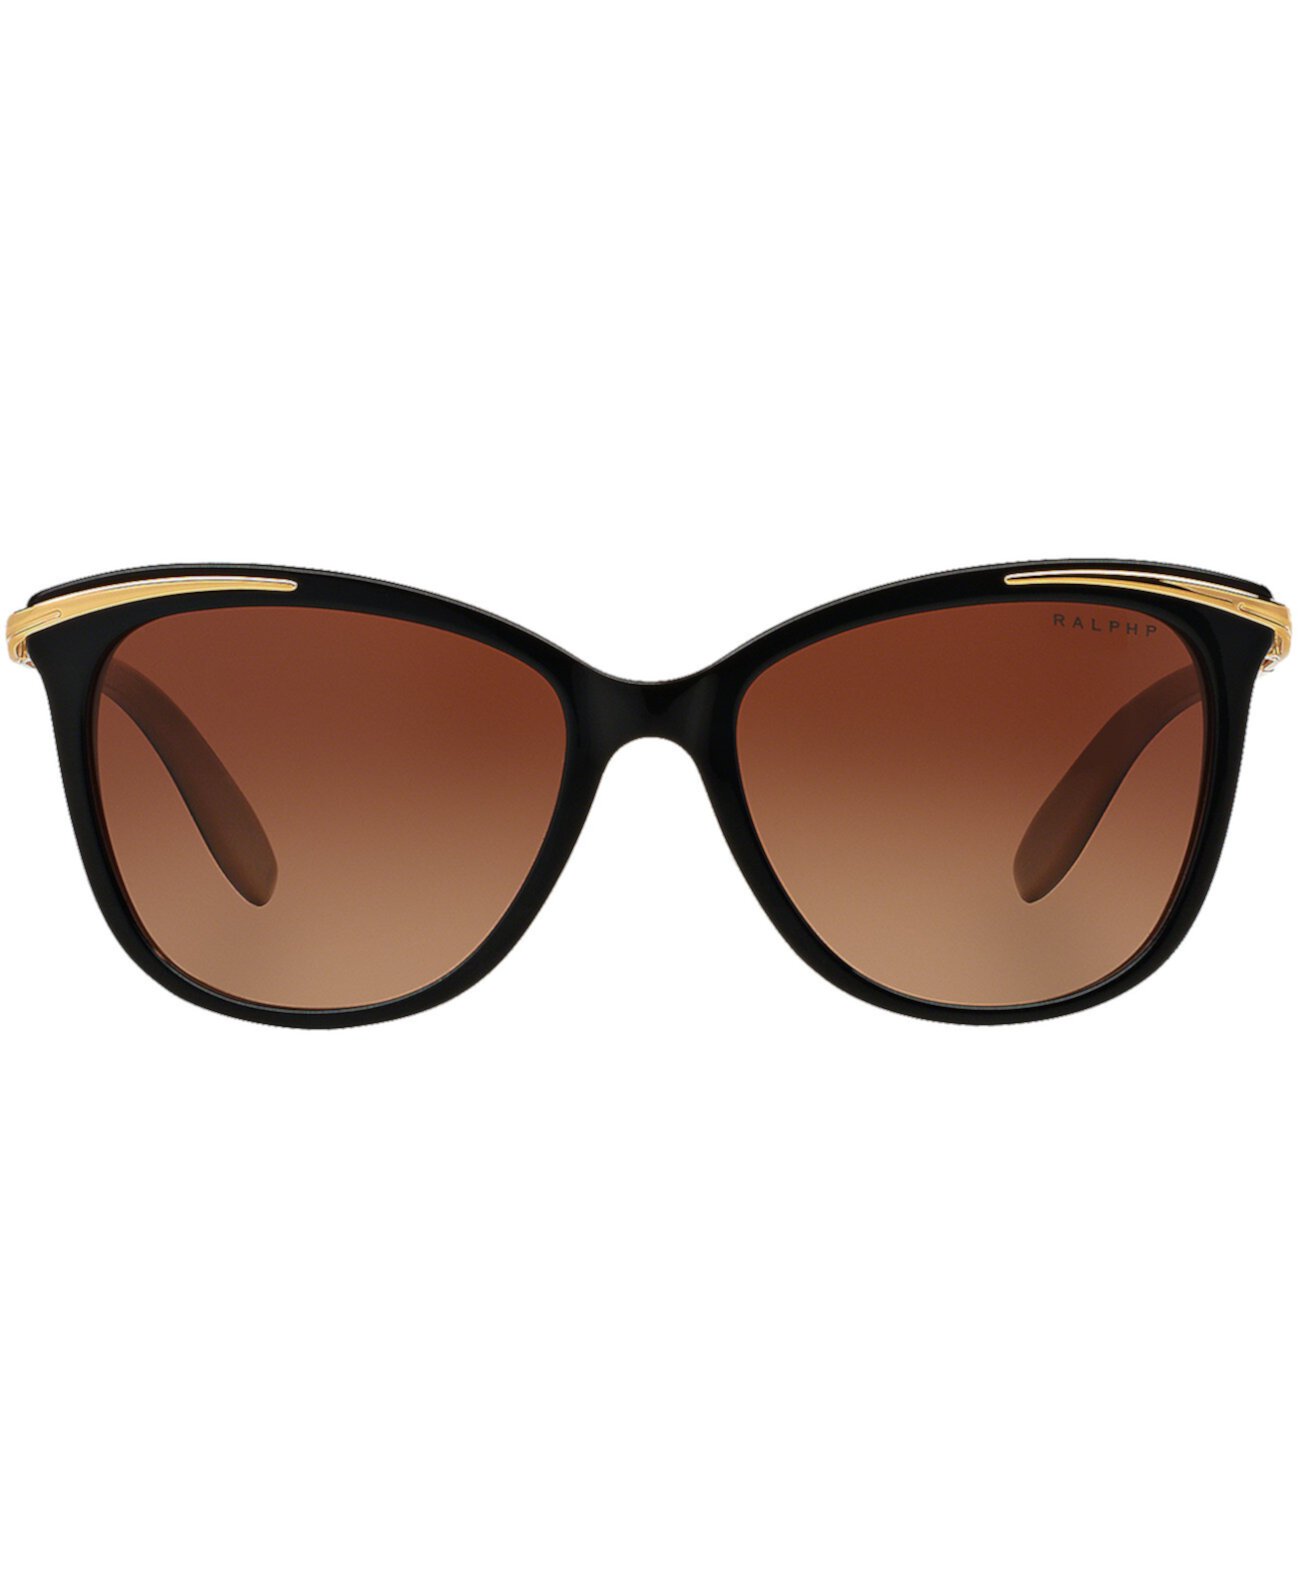 Поляризованные солнцезащитные очки Ralph Lauren, RA5203 Ralph Lauren